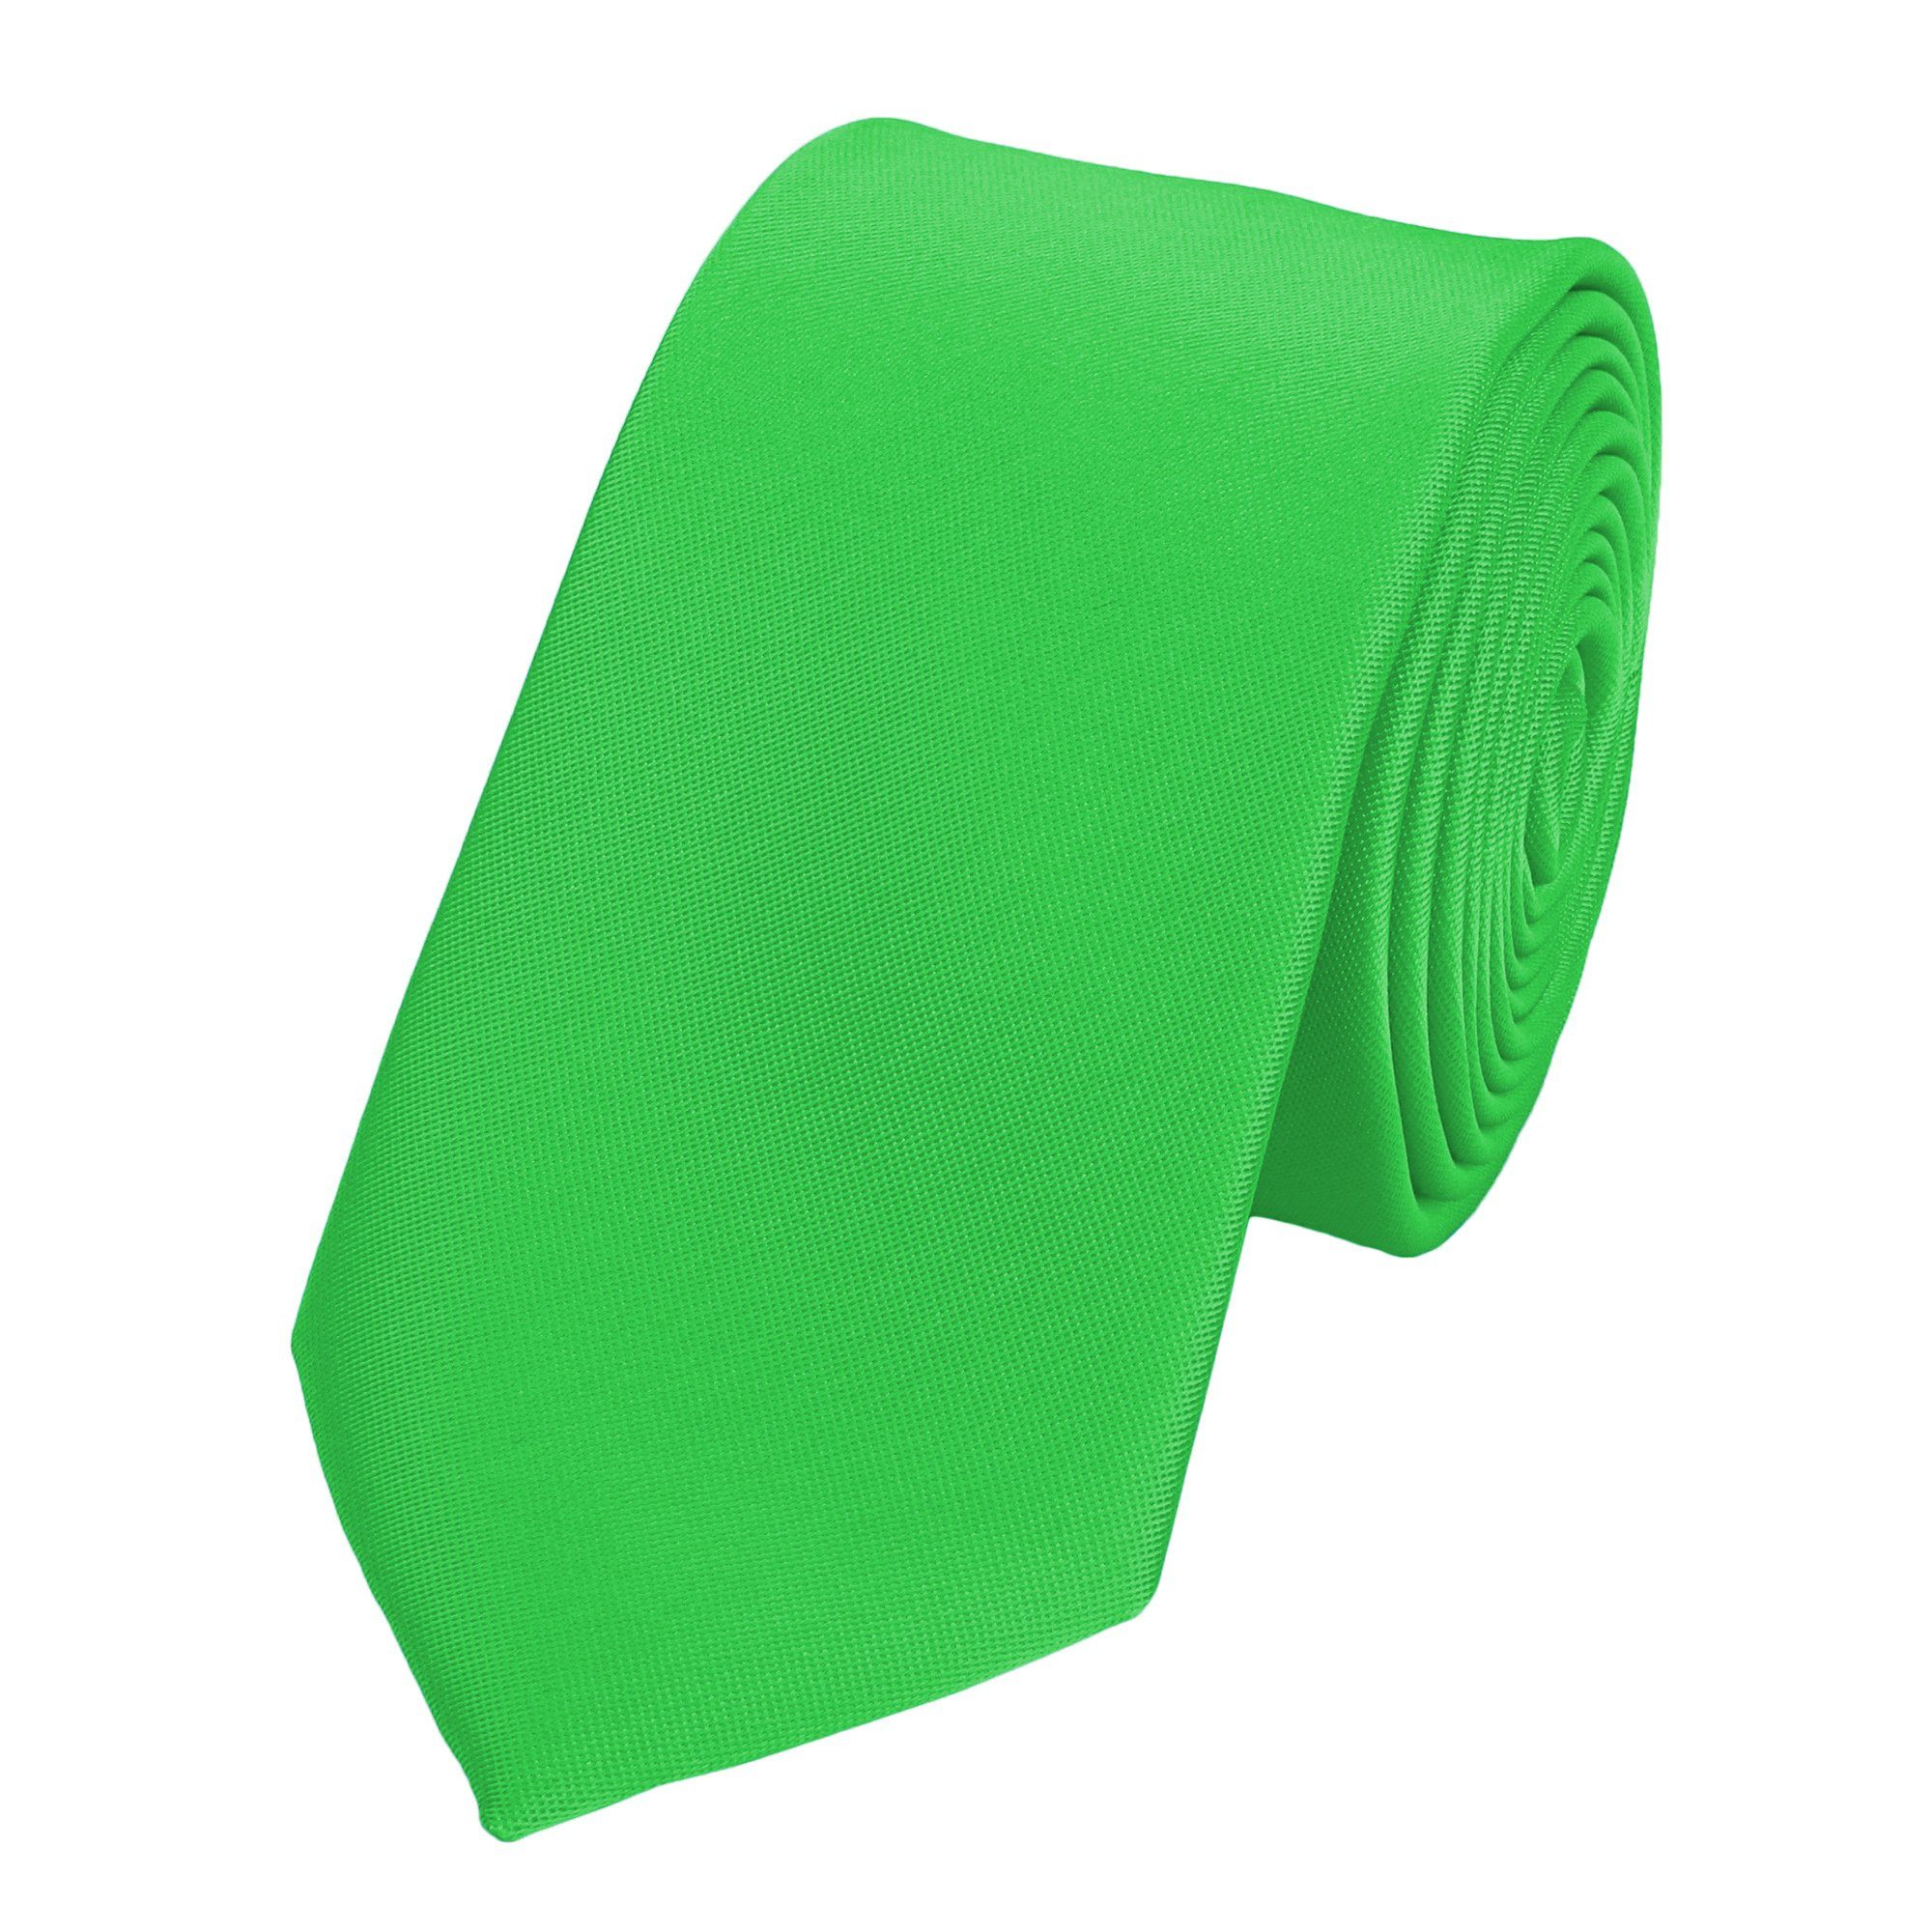 Fabio Farini Krawatte Herren Krawatte Grün - verschiedene Grüne Männer Schlips in 6cm (ohne Box, Unifarben) Schmal (6cm), Hellgrün - Emerald